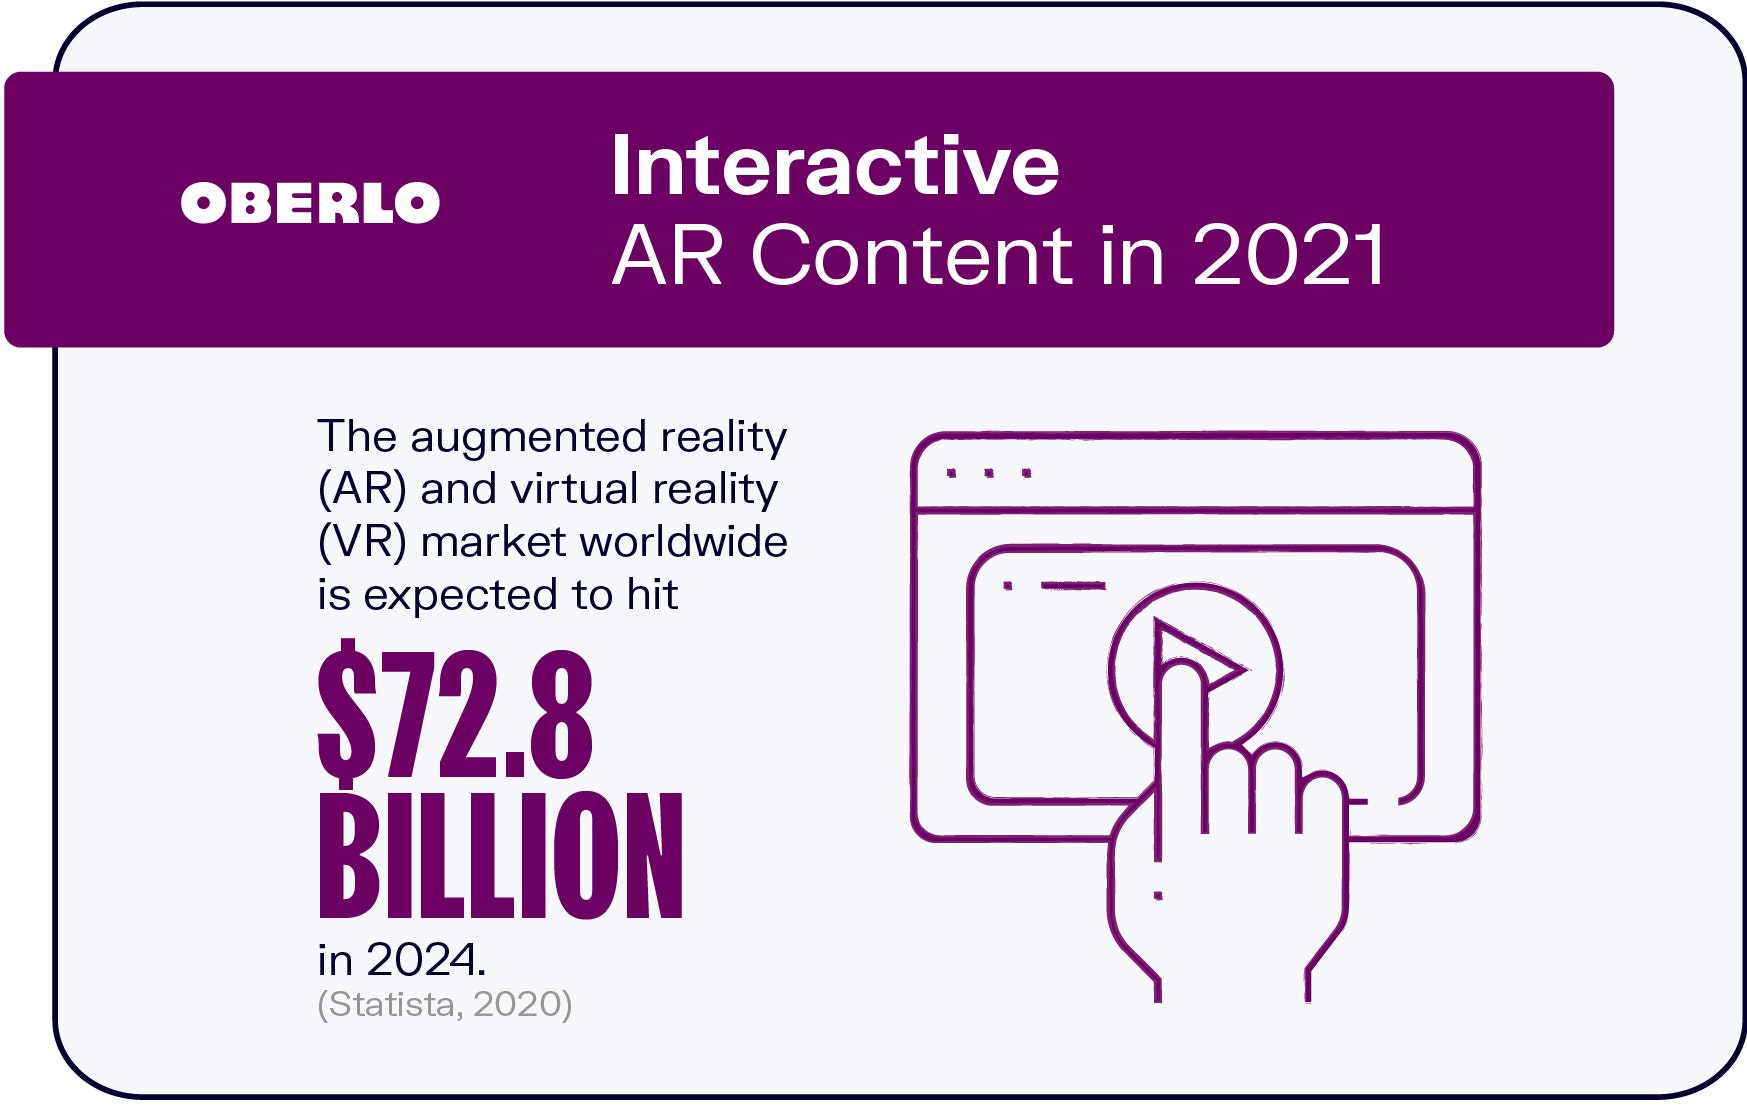 Contenido AR interactivo en 2021